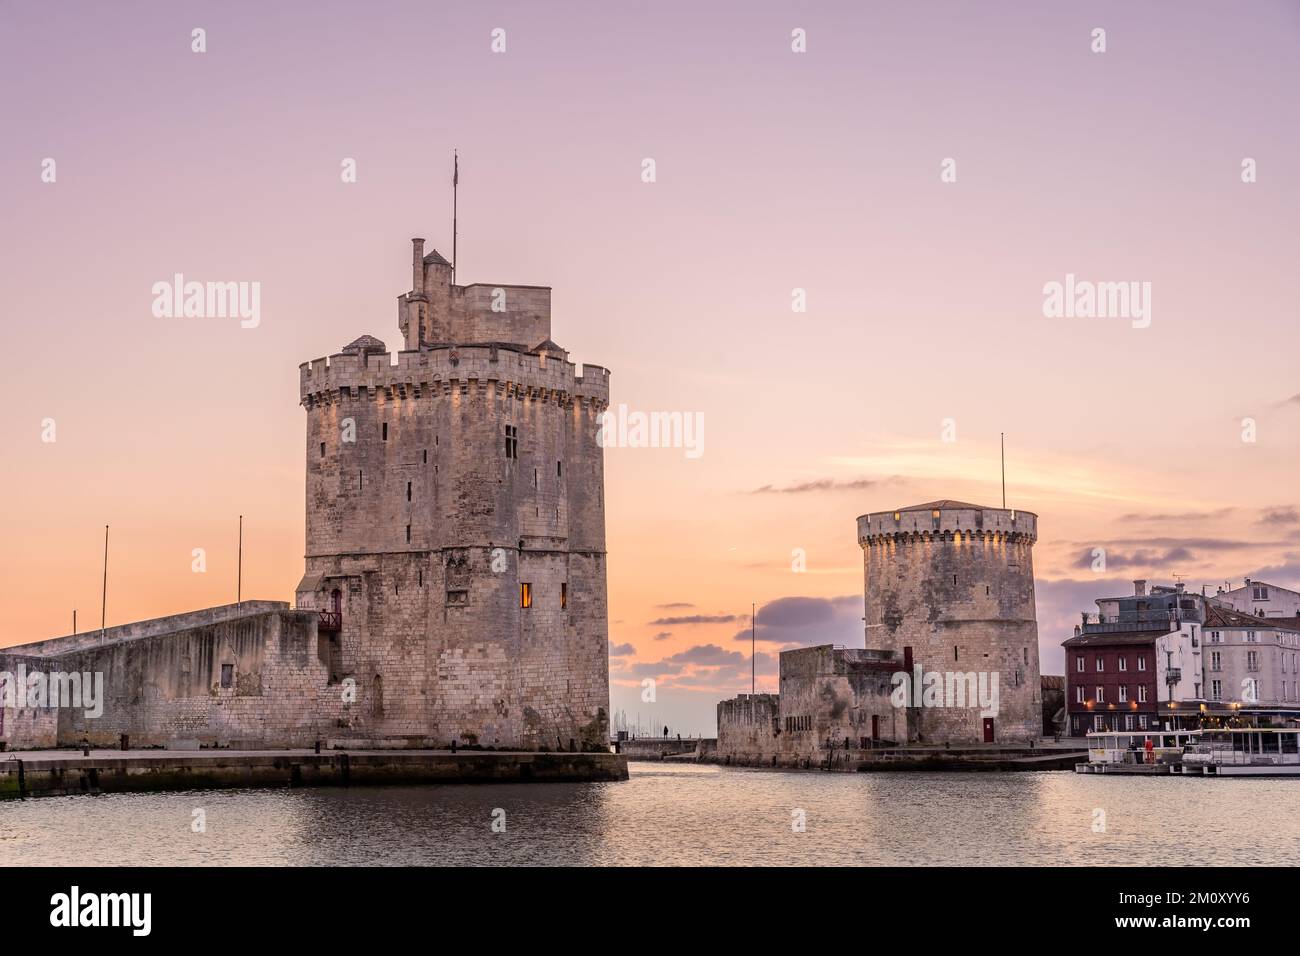 Port de la rochelle au coucher du soleil. Panorama. Les célèbres tours de la Rochelle sont illuminées de la lumière de noël. Banque D'Images